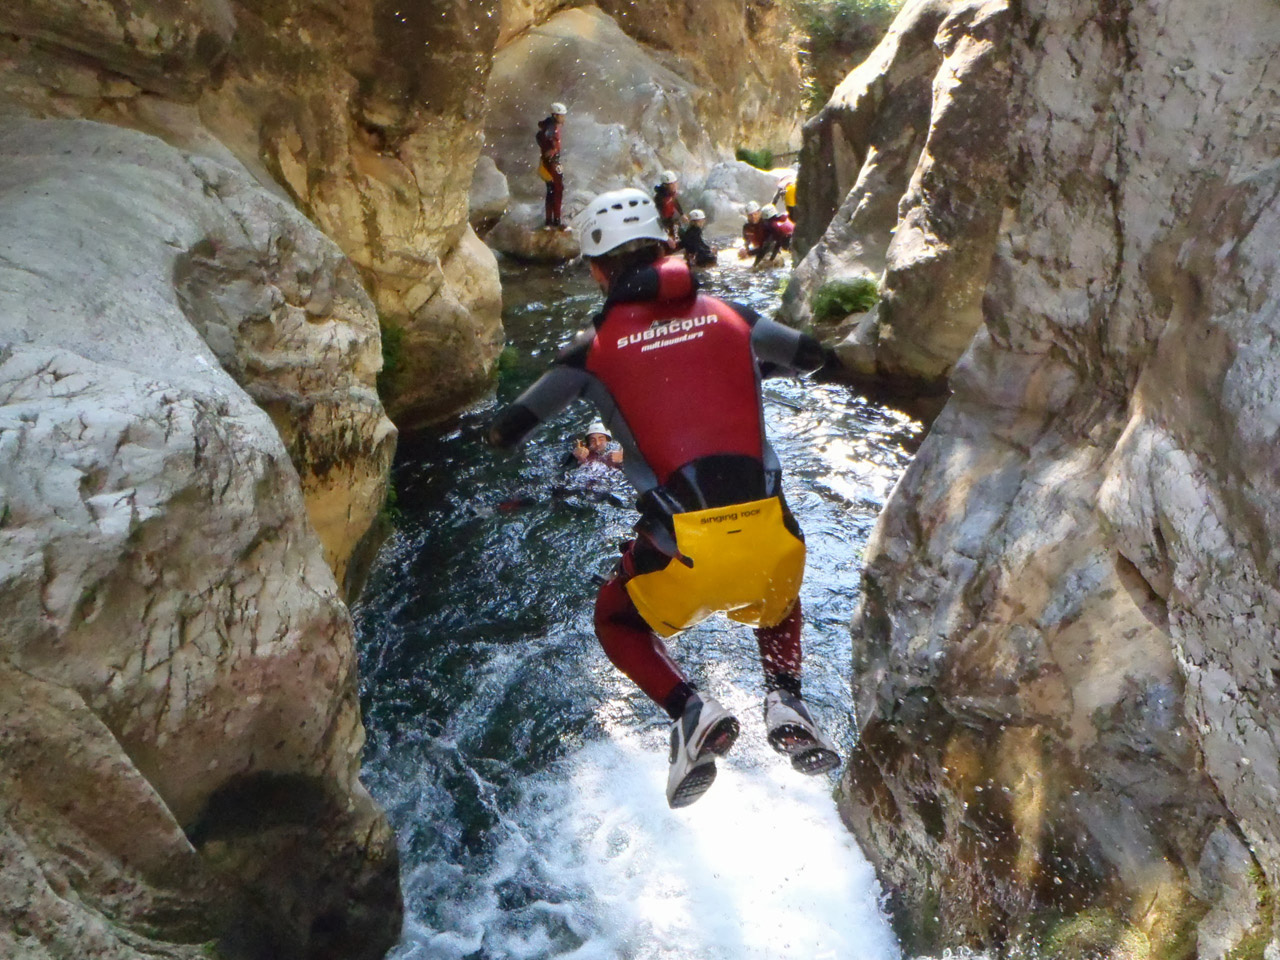 Varias personas debidamente equipadas haciendo barranquismo, una de ellas saltando a una poza de agua en un cañón rocoso